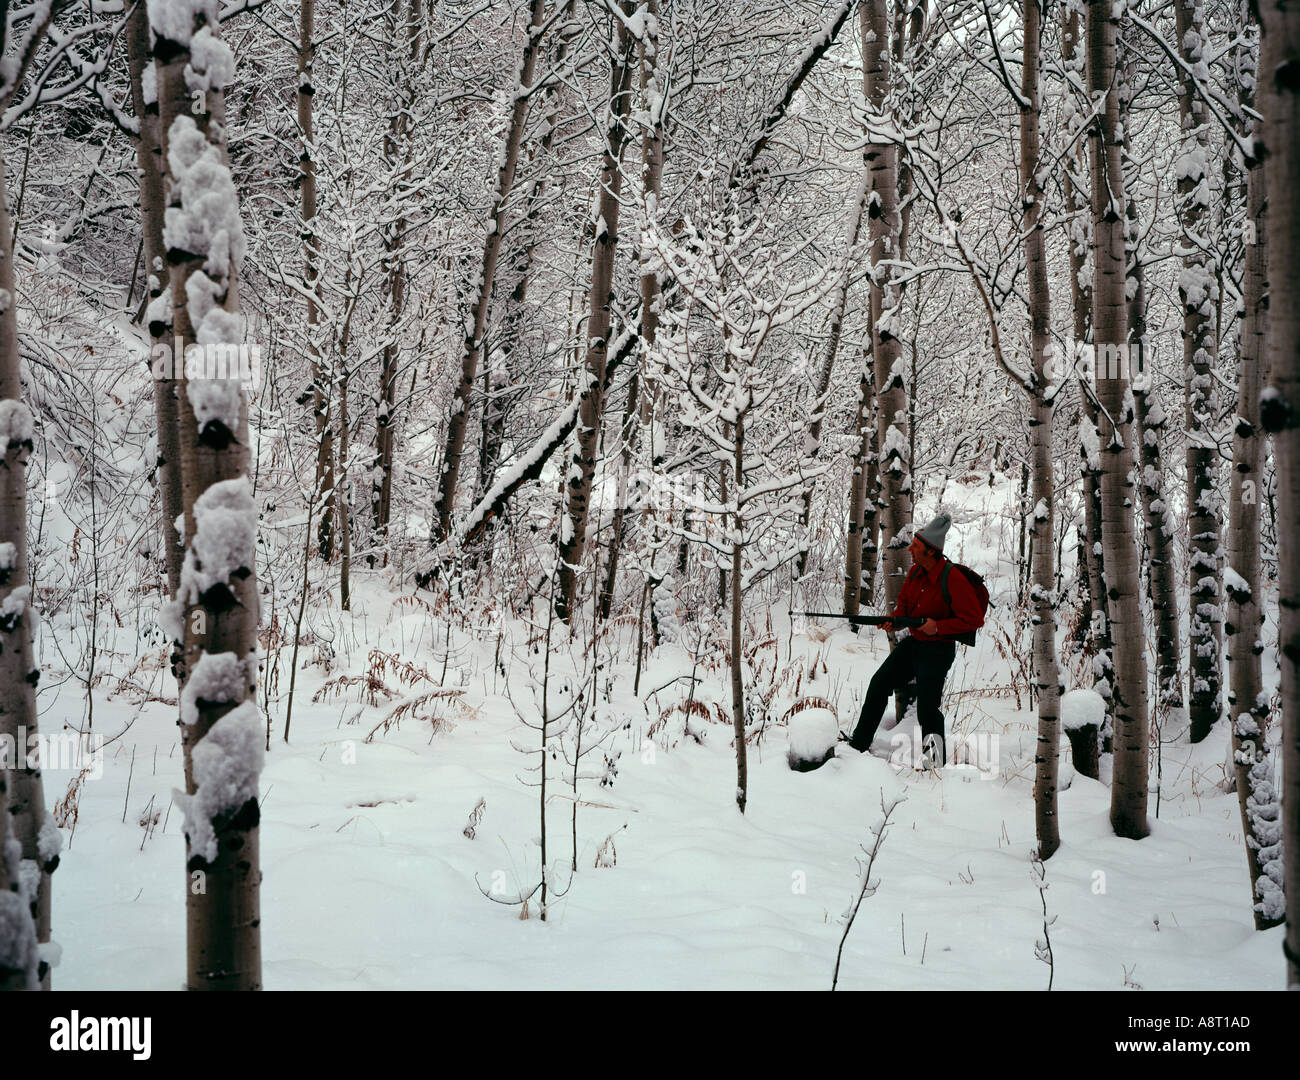 La chasse d'hiver après une tempête a recouvert de neige avec de nouveaux paysages Banque D'Images